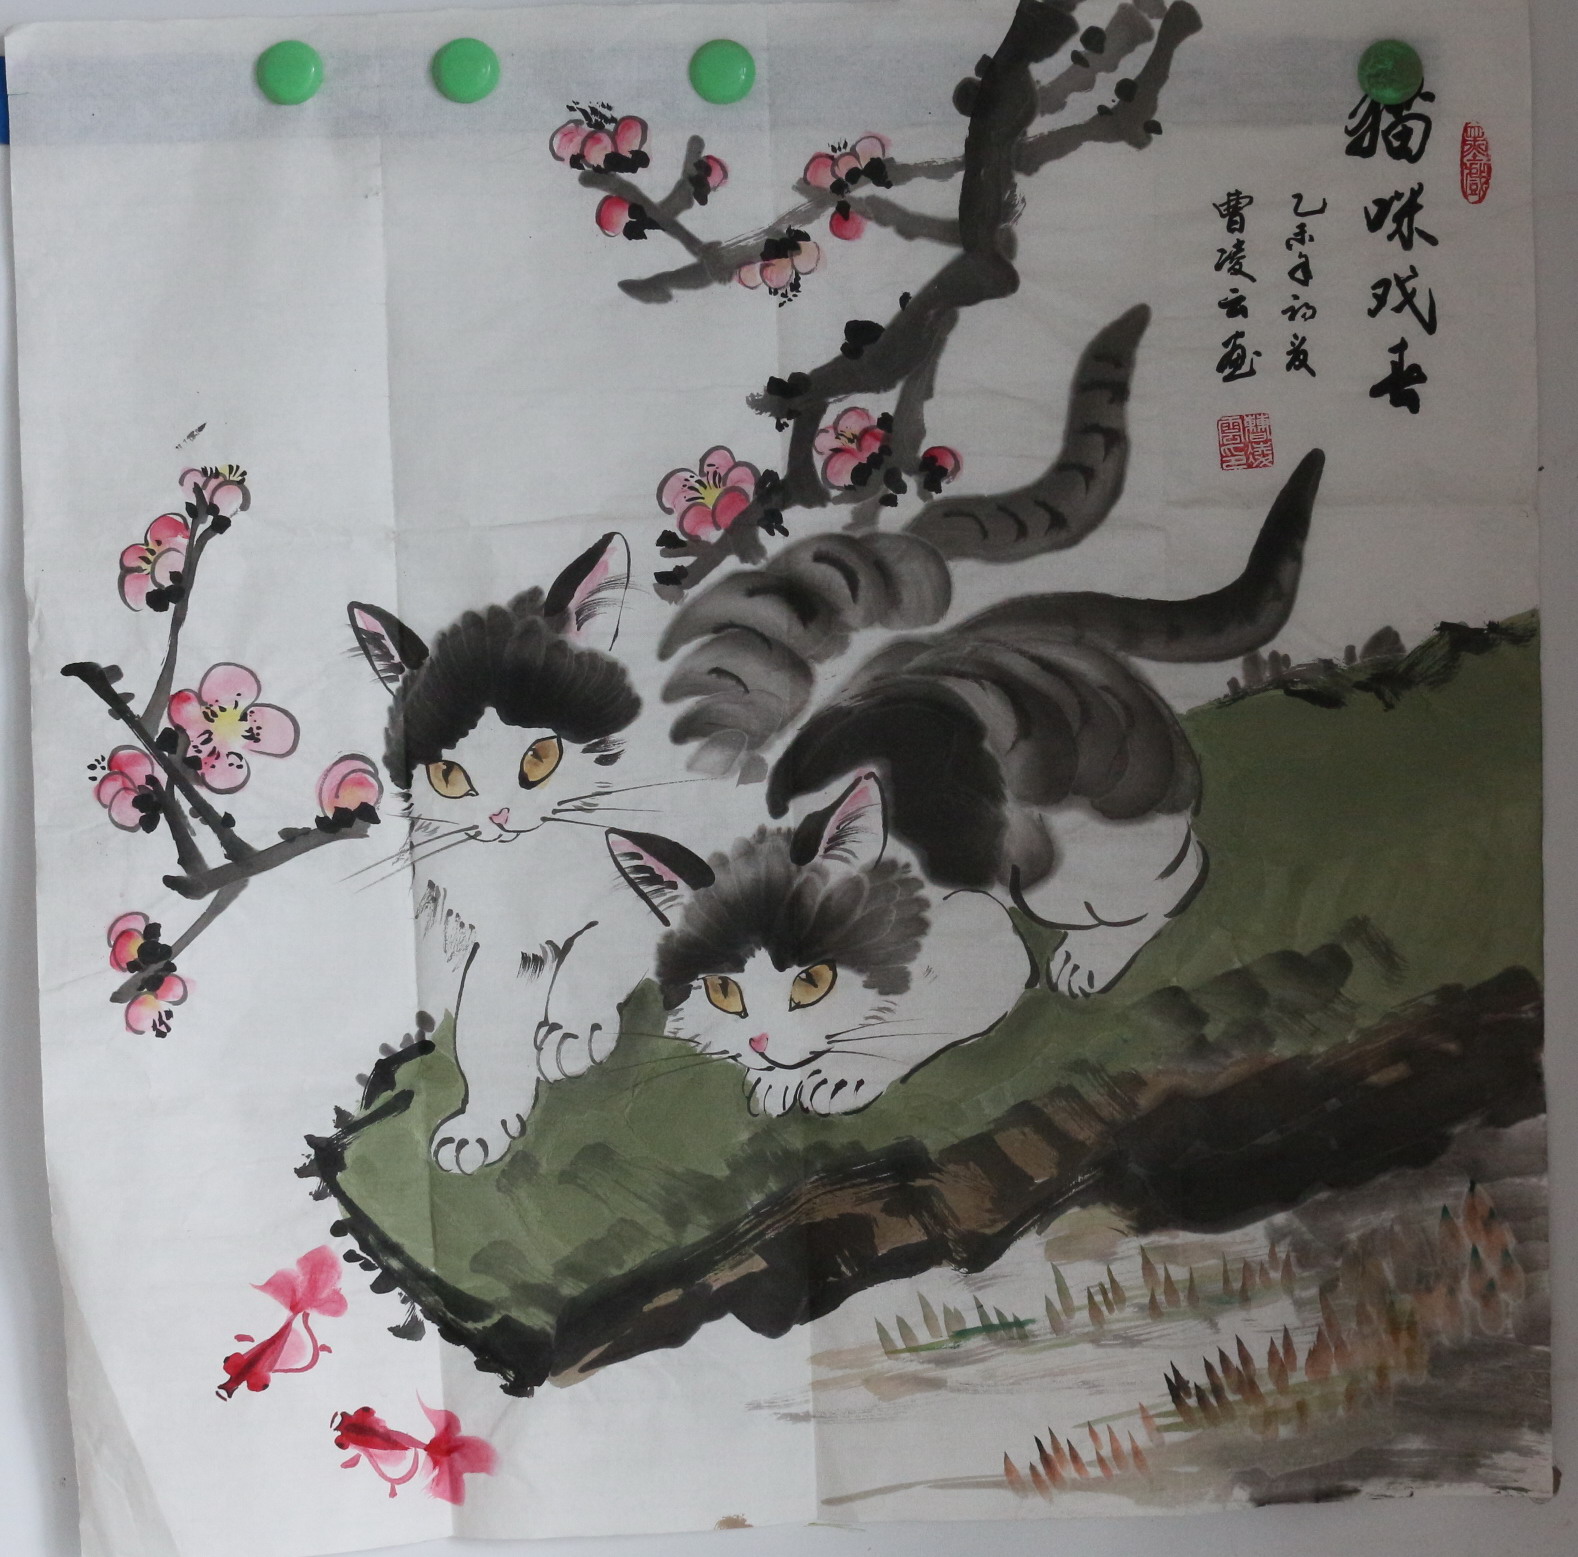 猫-曹凌云-国画 不议价    经纪人 电话：13598121270     包邮    每平尺二十万元整